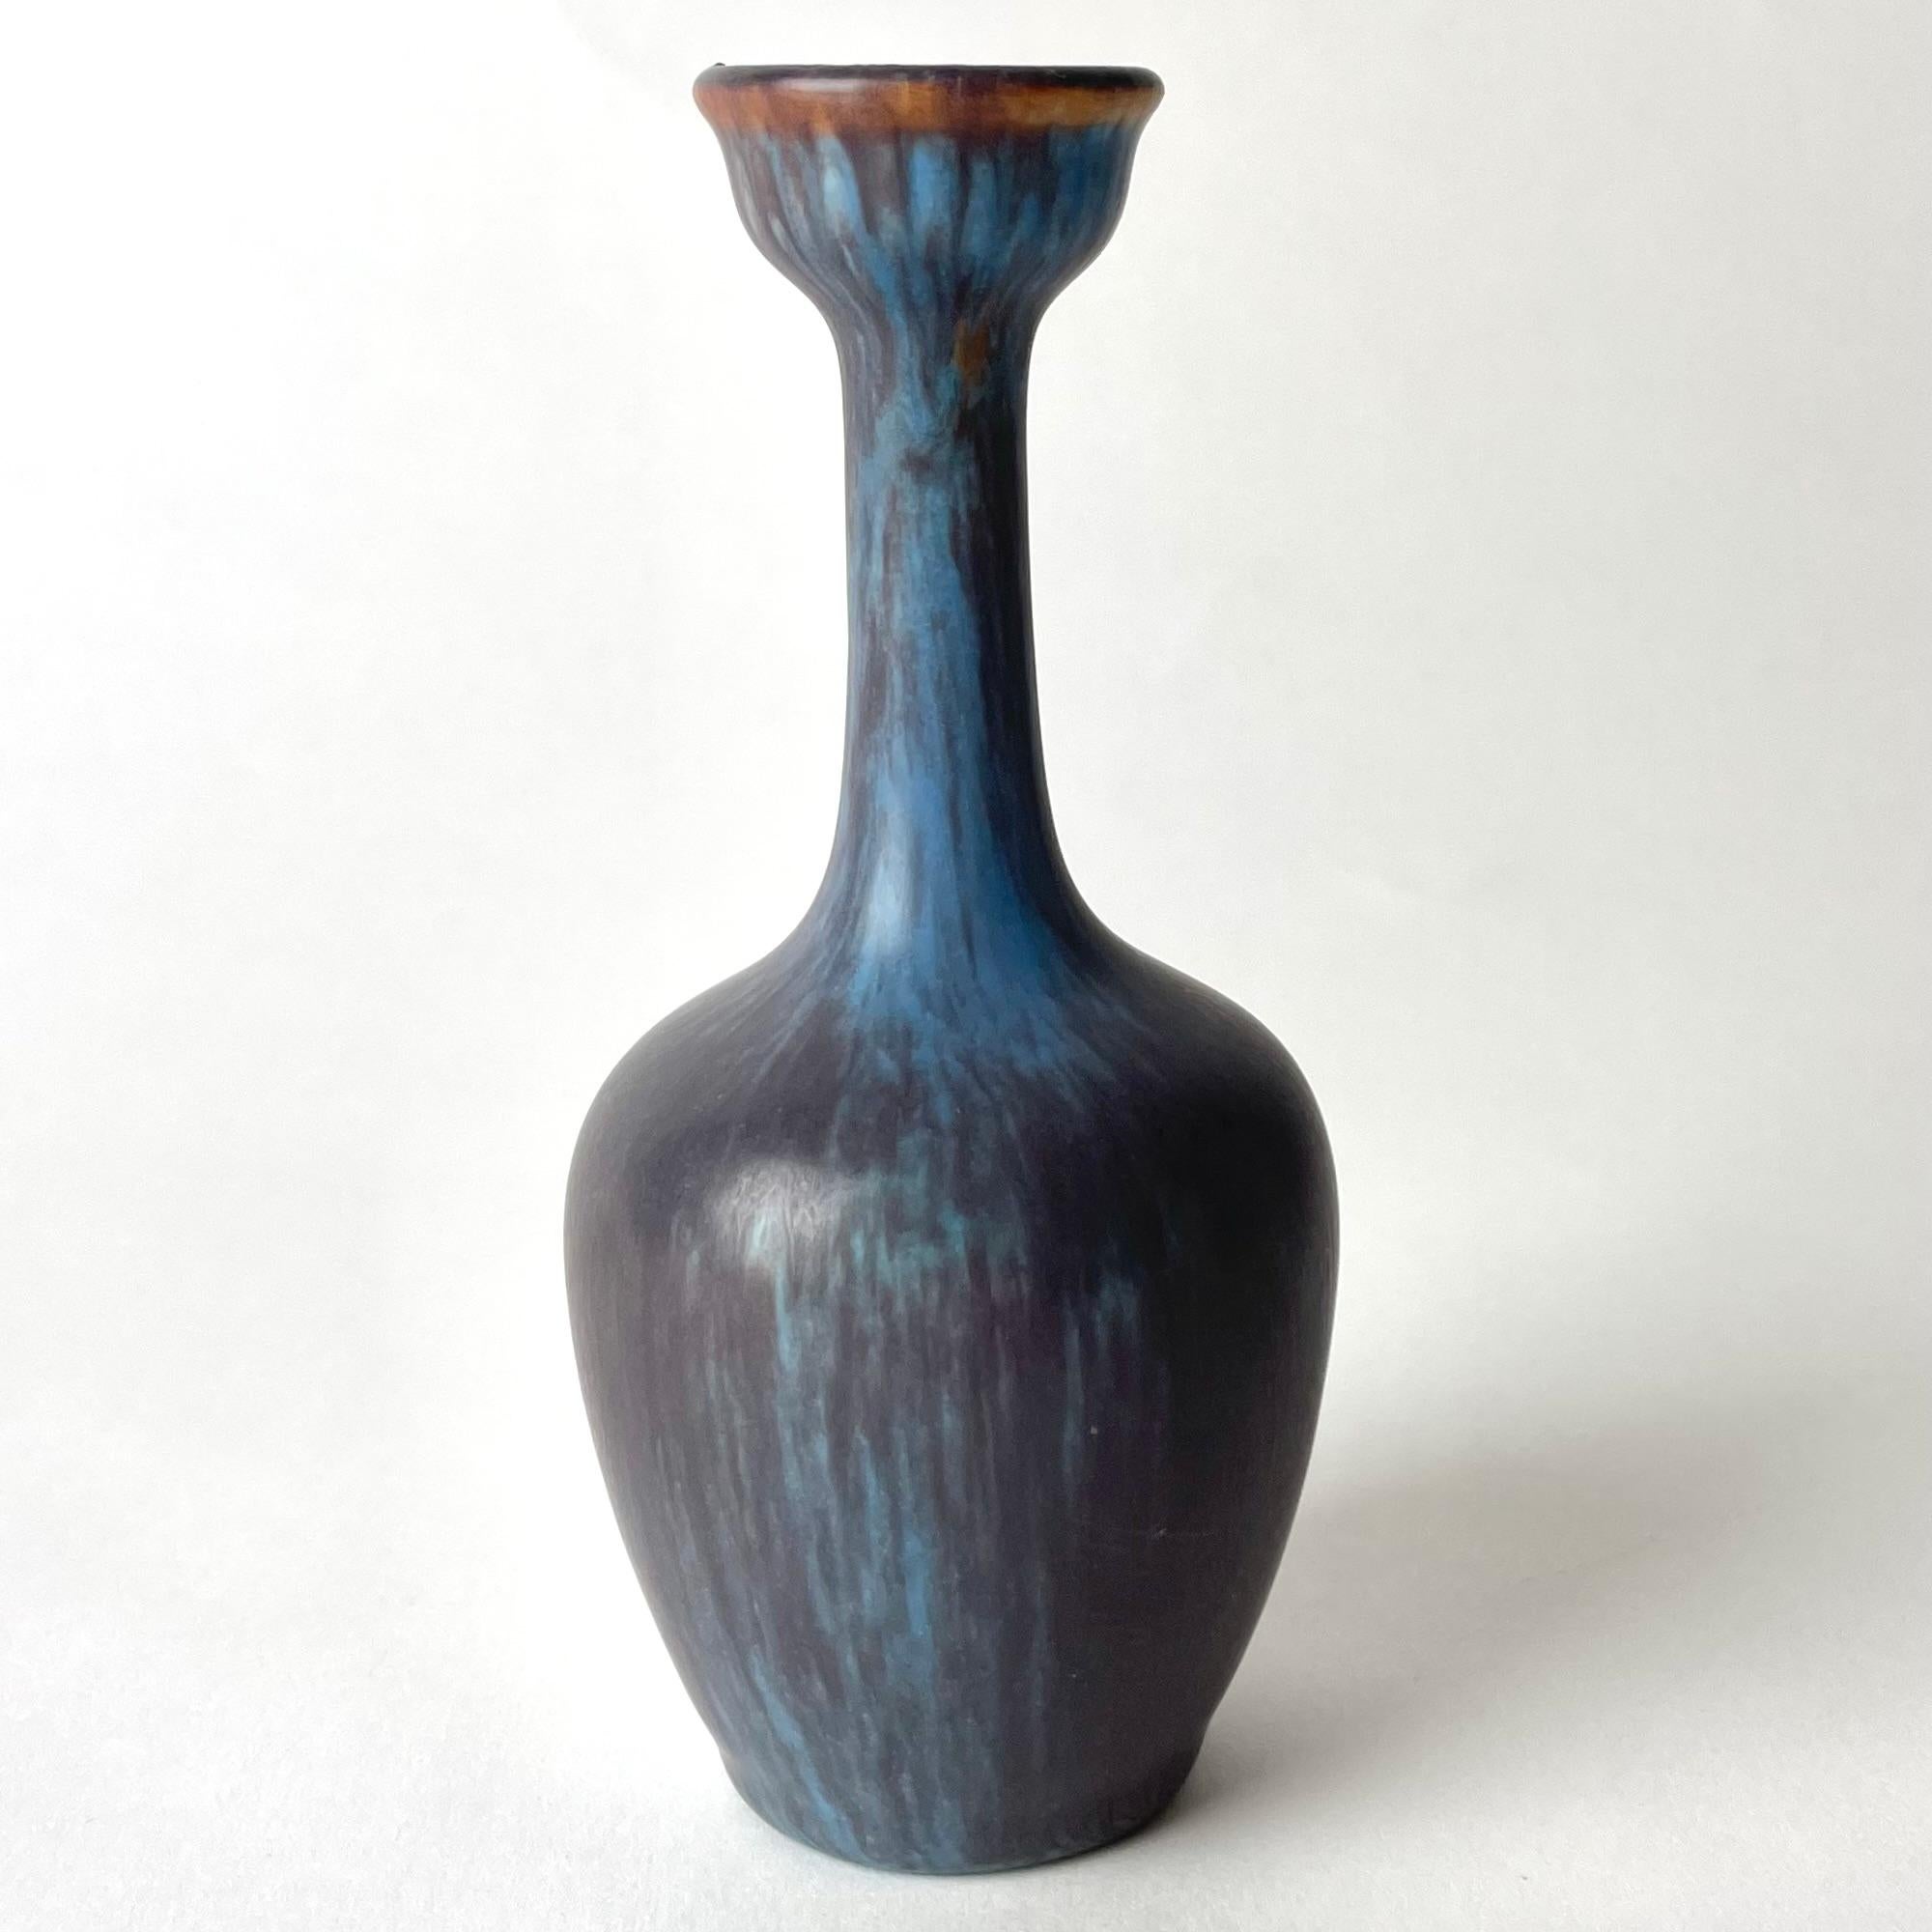 Elegante Vase aus Steingut von Gunnar Nylund (1904-1997), Rörstrands Porslinsfabrik, Schweden. Sehr zeitgemäßes Design aus der Mitte des 20. Jahrhunderts. Schöne Farbe.

Abnutzung entsprechend dem Alter und dem Gebrauch 